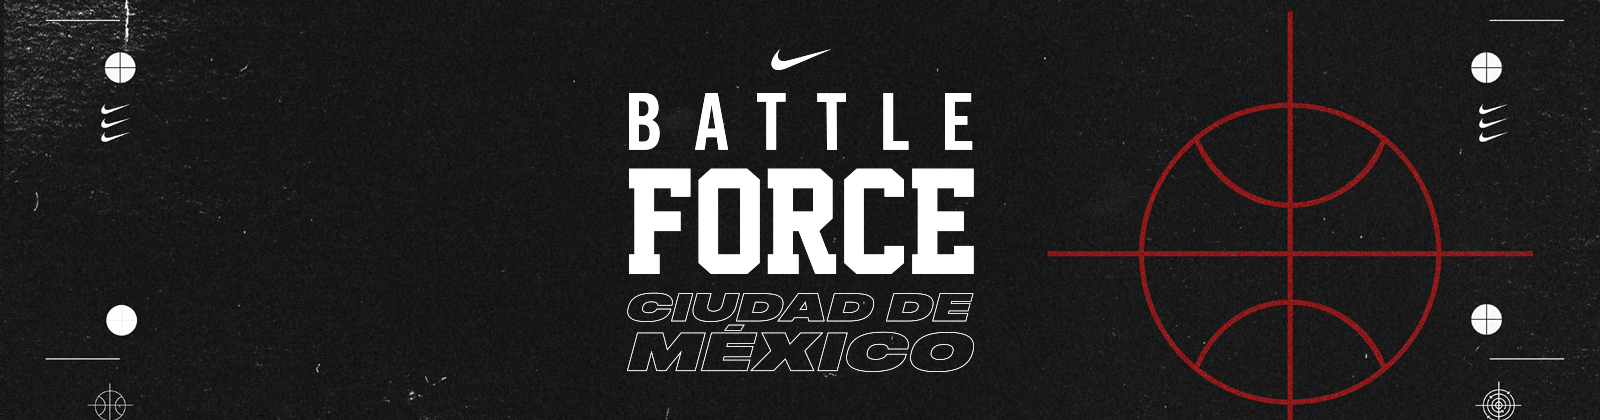 Nike Battle Force | Nike